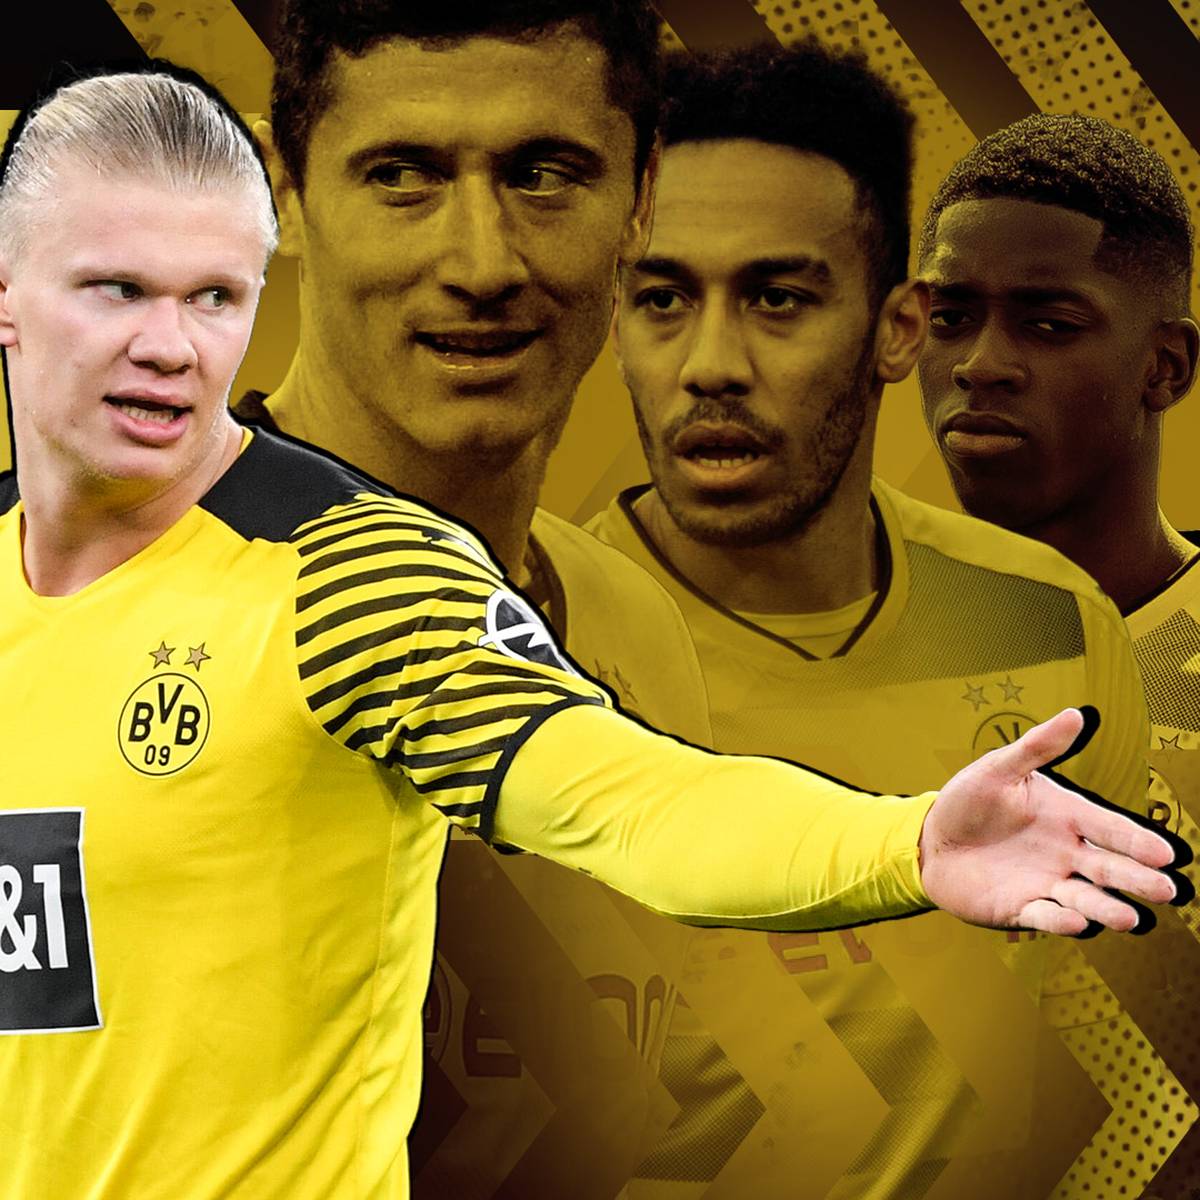 Erling Haaland gibt ein Interview, welches den Showdown um seine Zukunft endgültig beginnen lässt. Doch wie liefen derartige Transfer-Poker in der Vergangenheit für Borussia Dortmund?